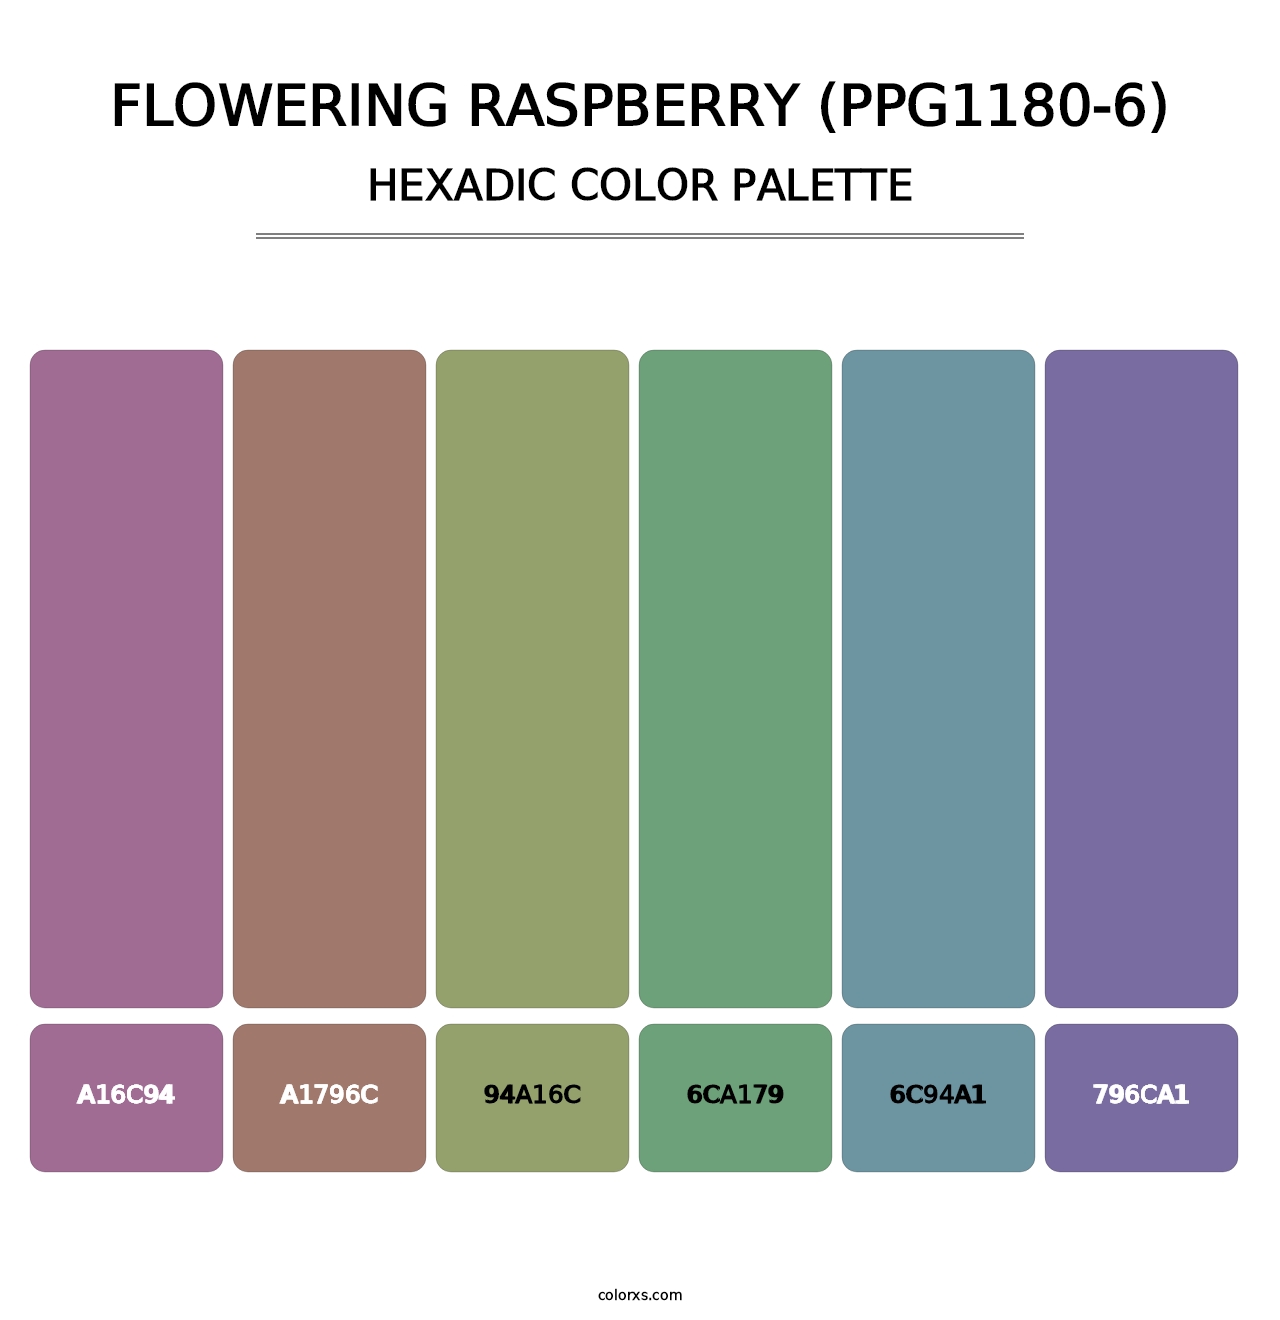 Flowering Raspberry (PPG1180-6) - Hexadic Color Palette